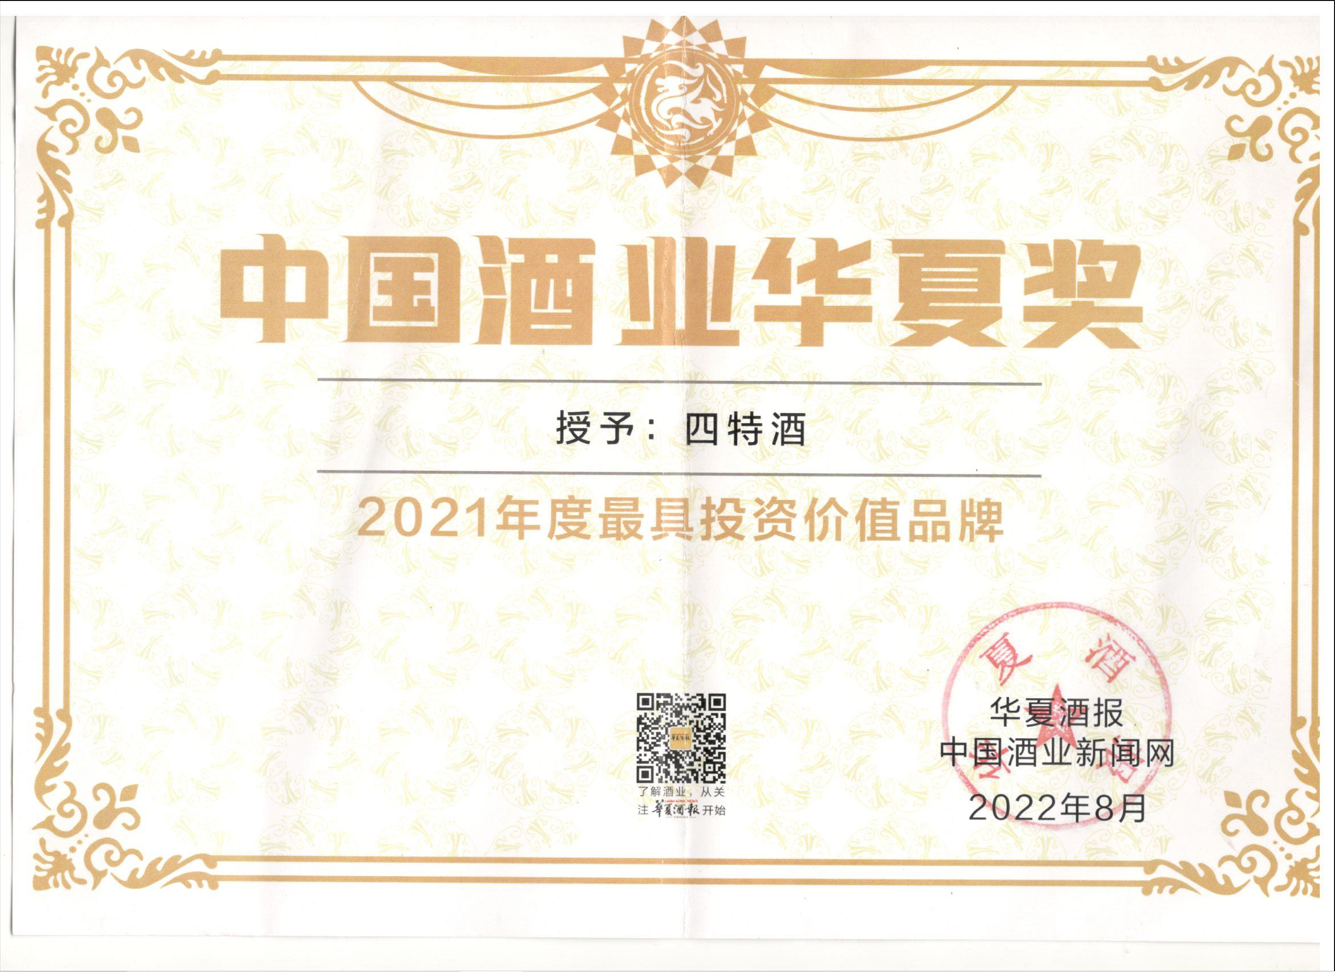 2021年度最具投资价值品牌  中国酒业华夏奖